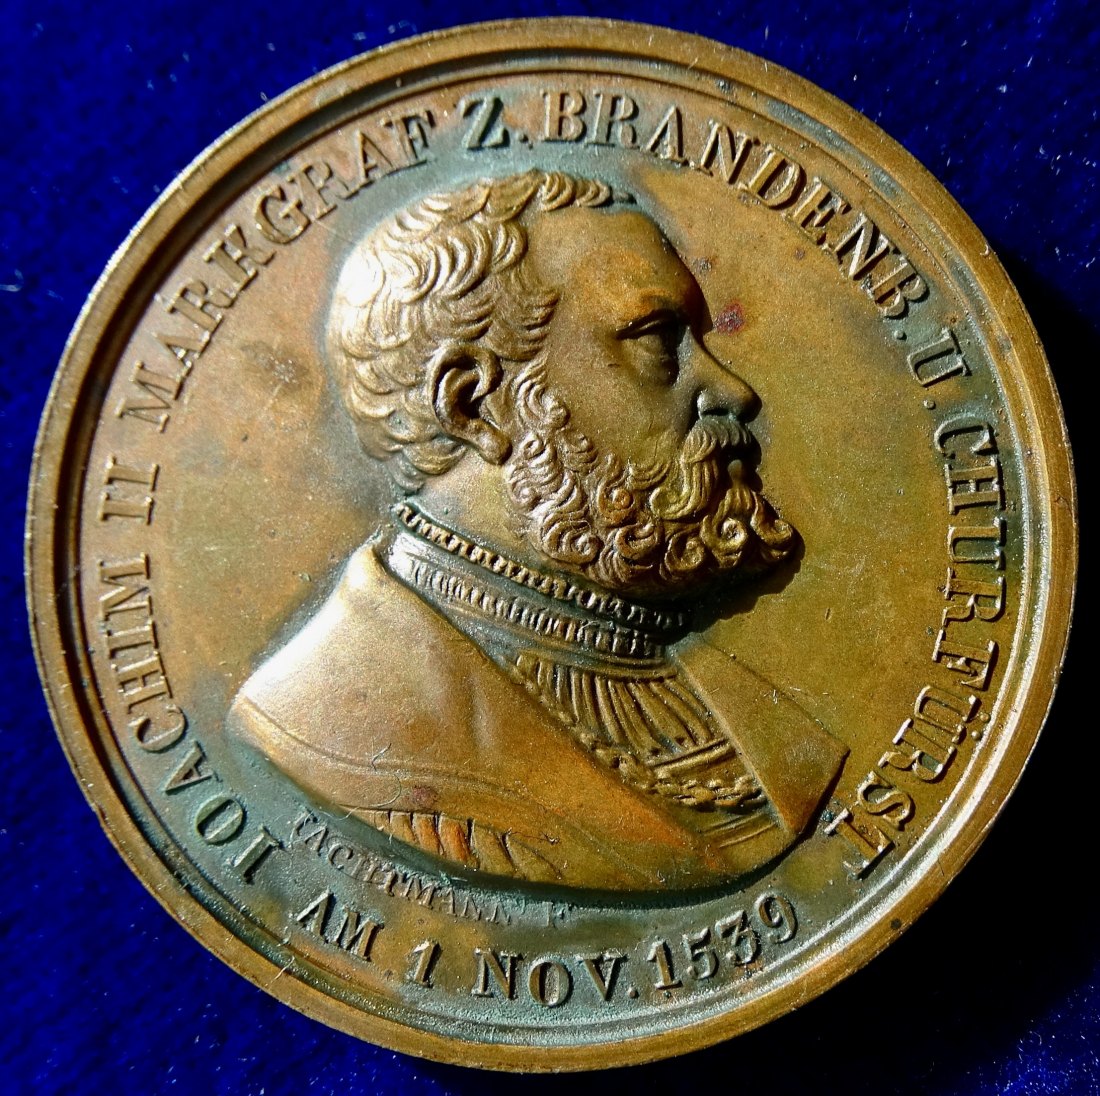  Preußen Medaille 1839 zur 300-jahrfeier der Einführung der Reformation in Brandenburg   